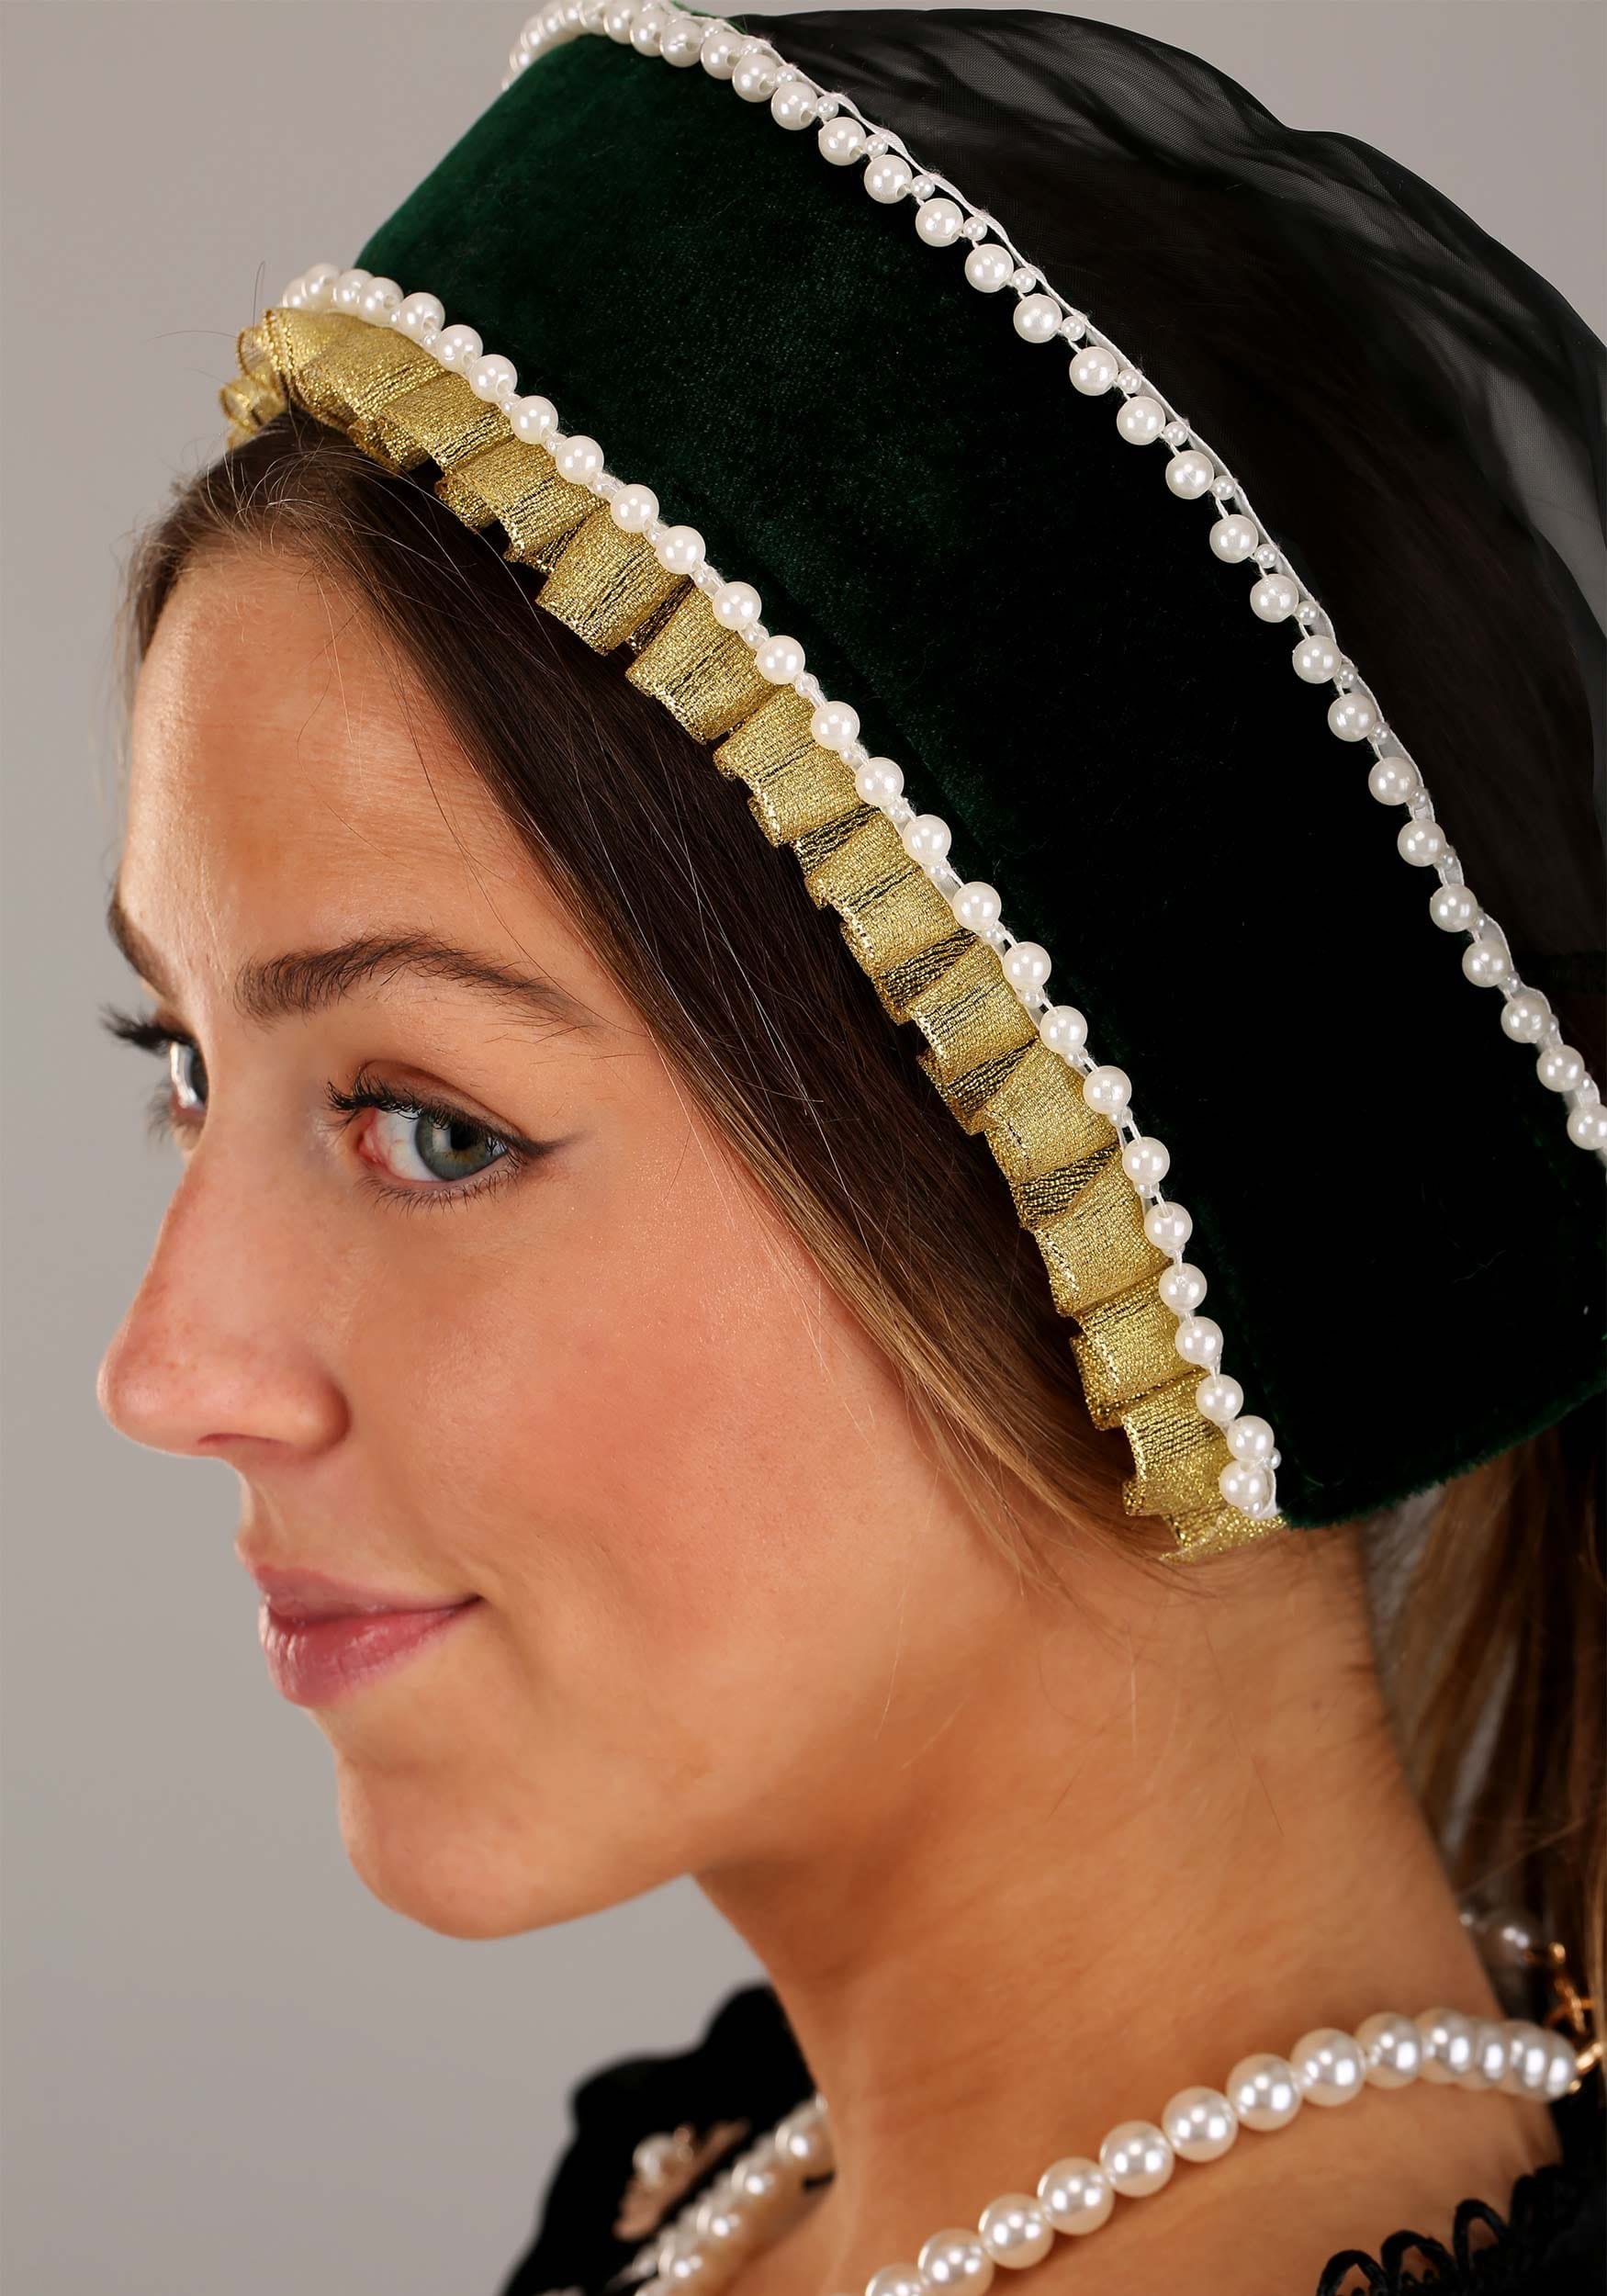 Costume Kit - Queen Anne Boleyn